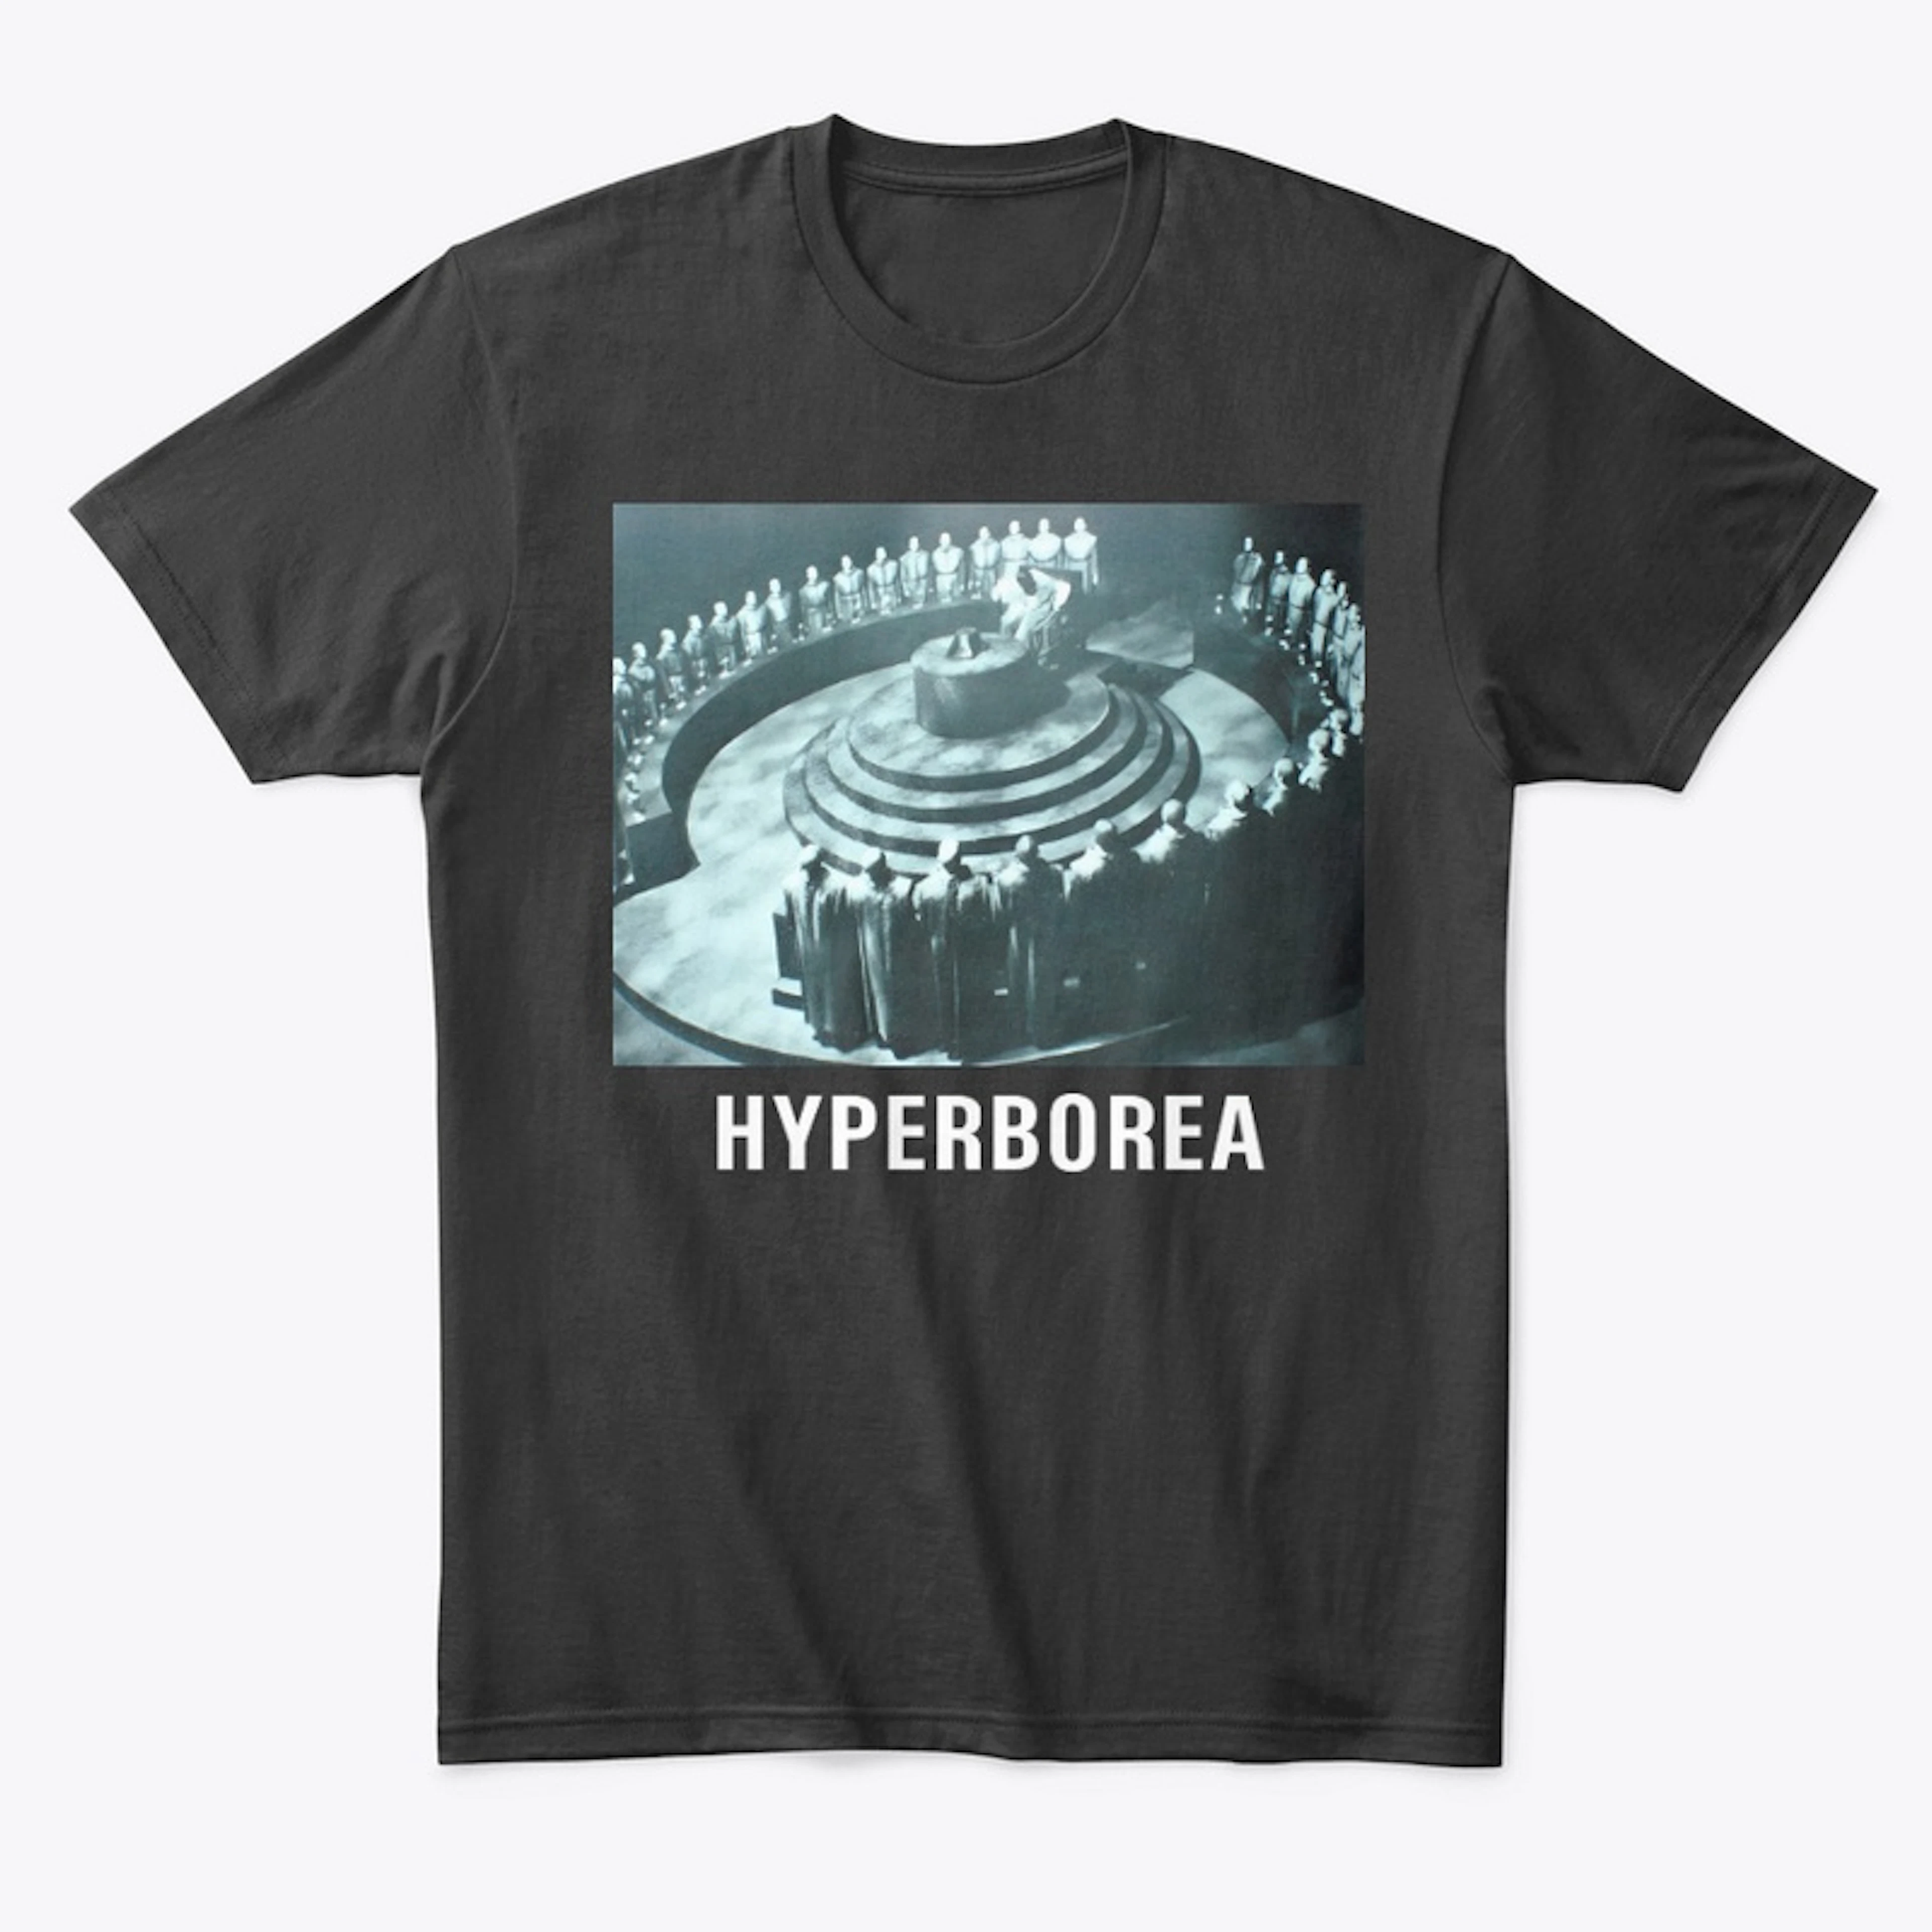 Hyperborea (council)